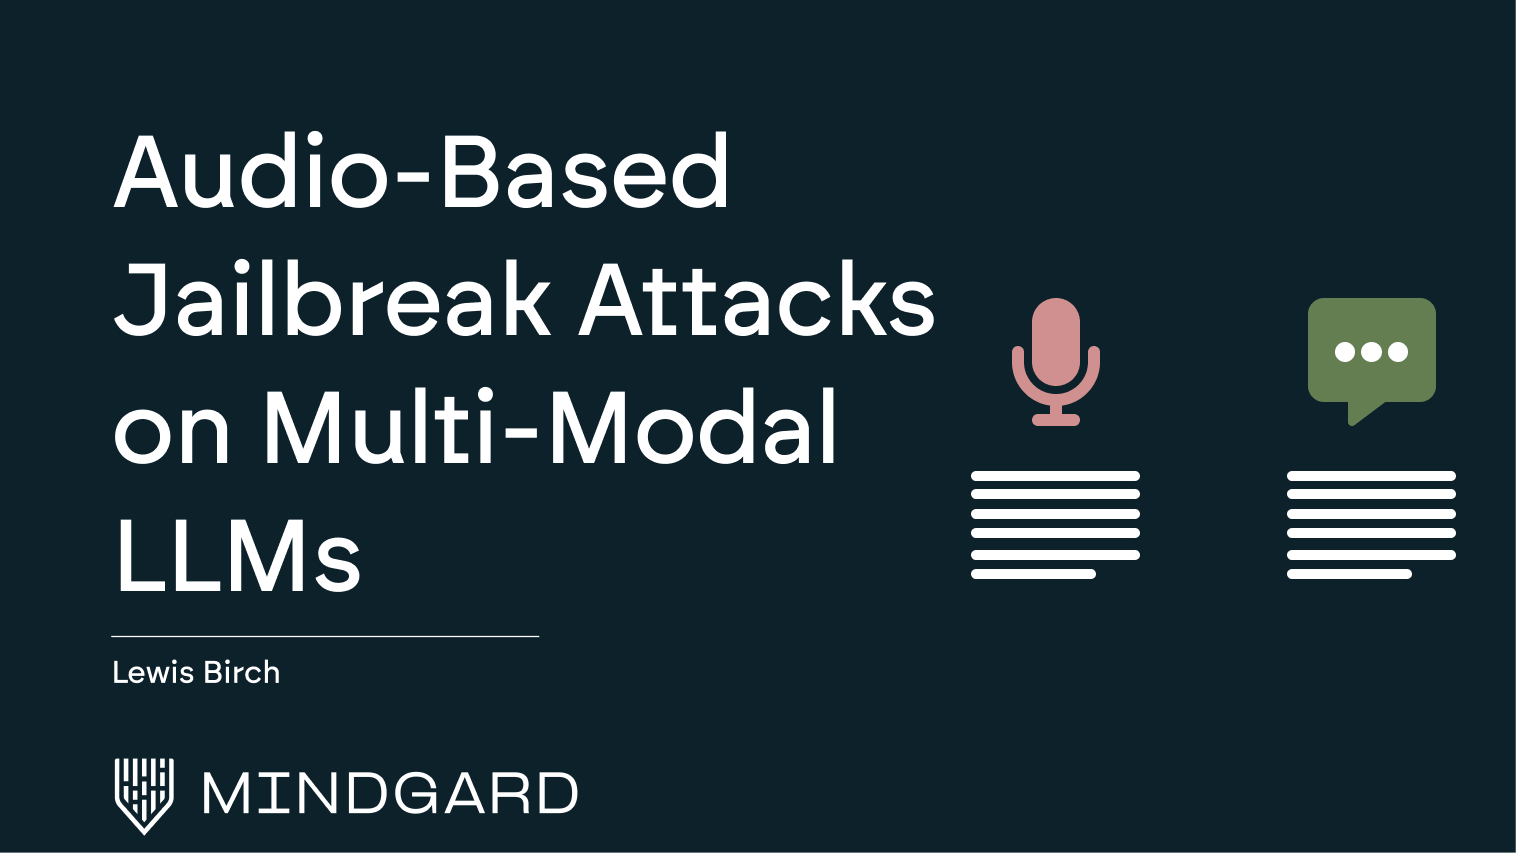 Audio-Based Jailbreak Attacks on Multi-Modal LLMs